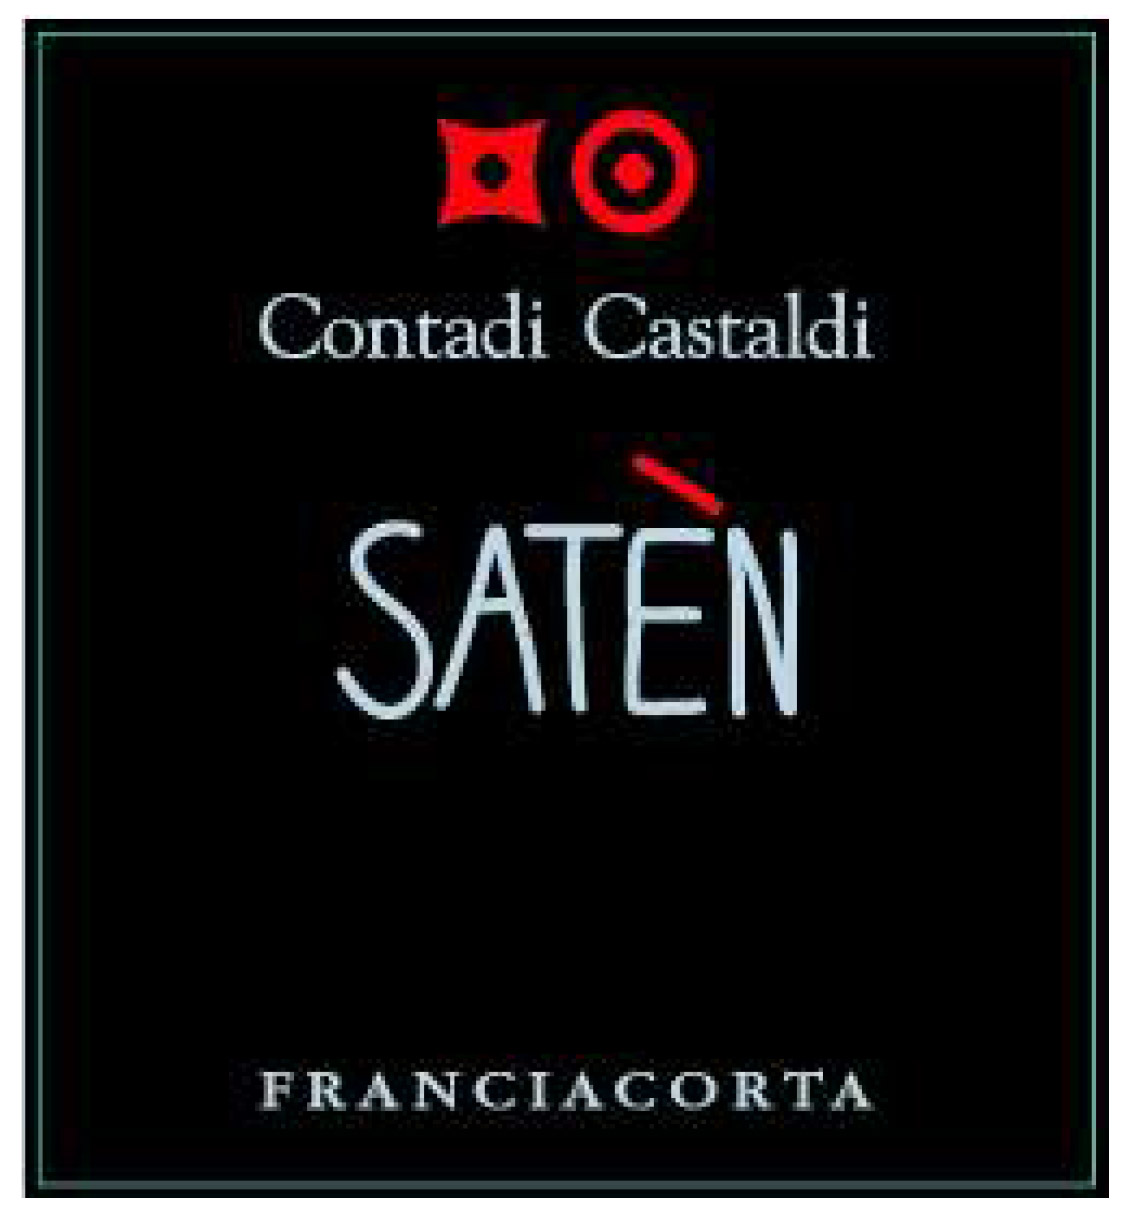 Contadi Castaldi - Saten label